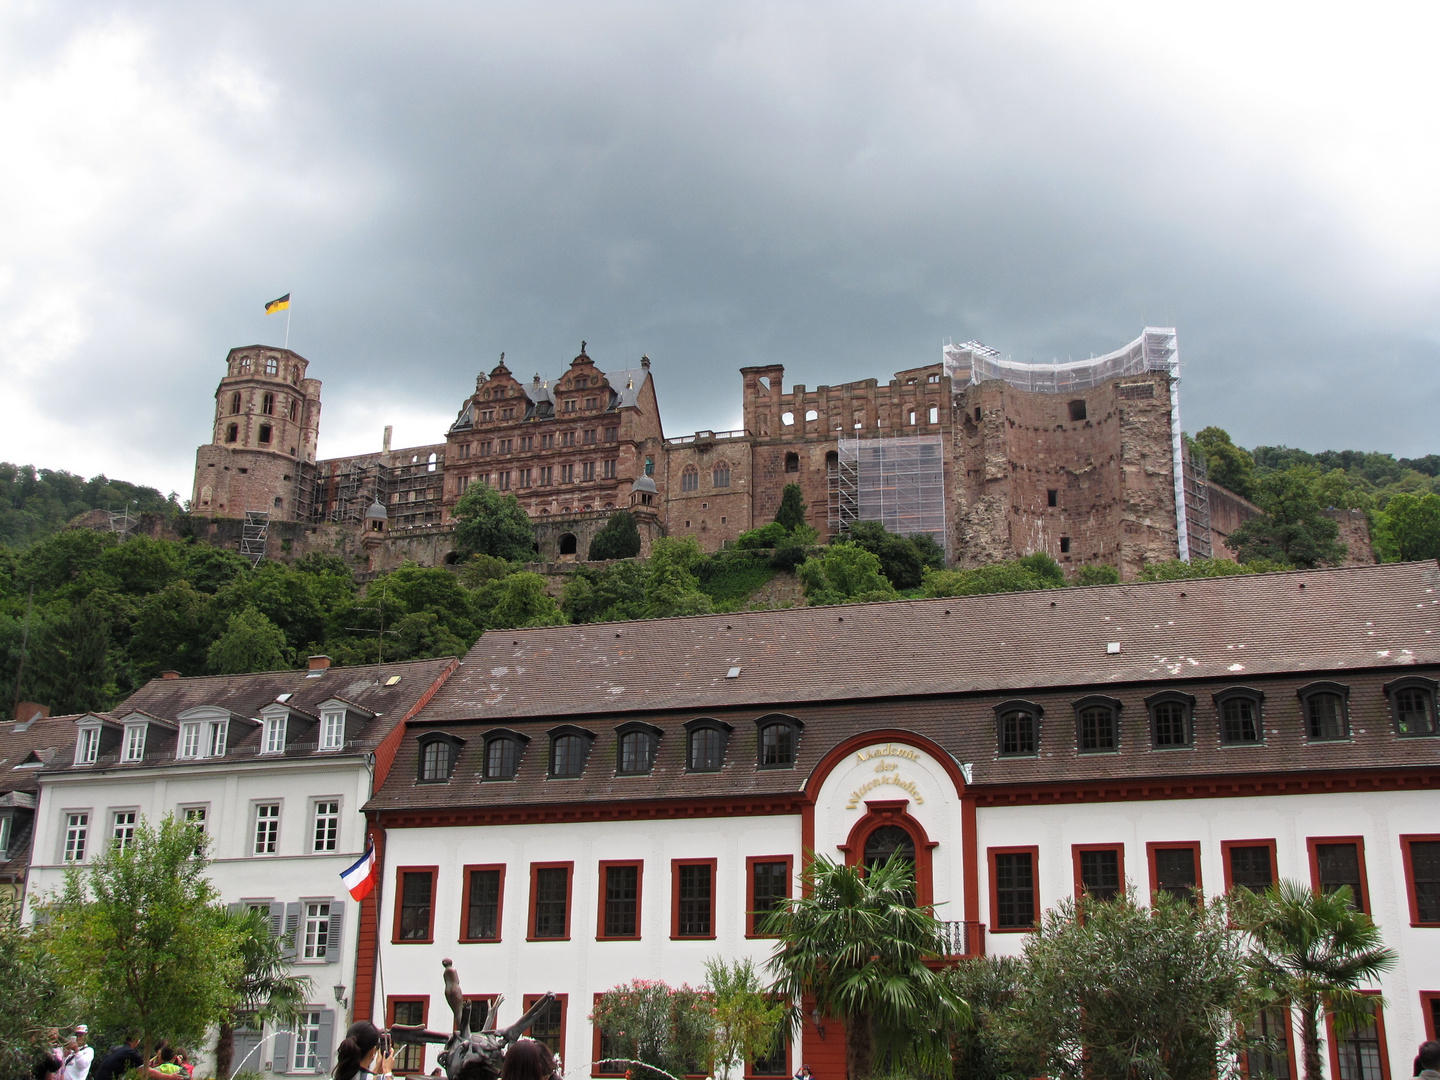 Blick zum Heidelberger Schloß